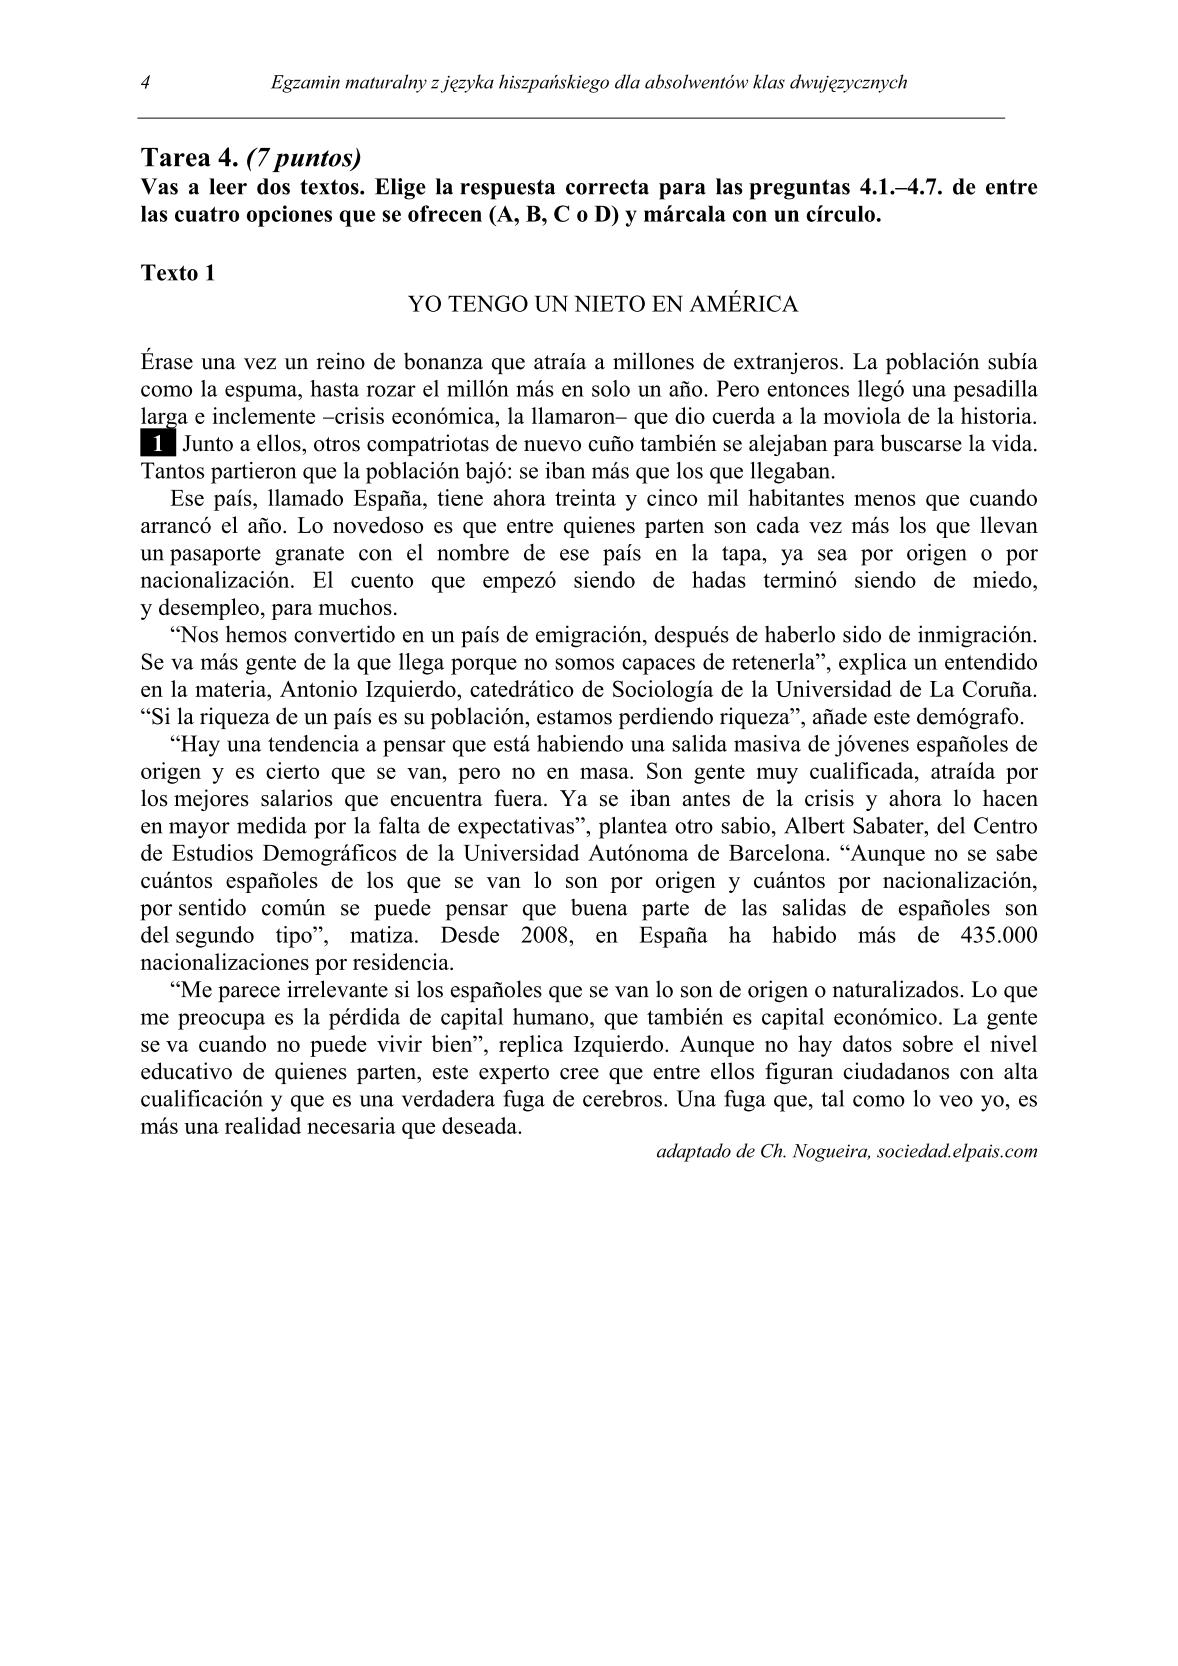 pytania-hiszpanski-dla-absolwentow-klas-dwujezycznych-matura-2014-str.4